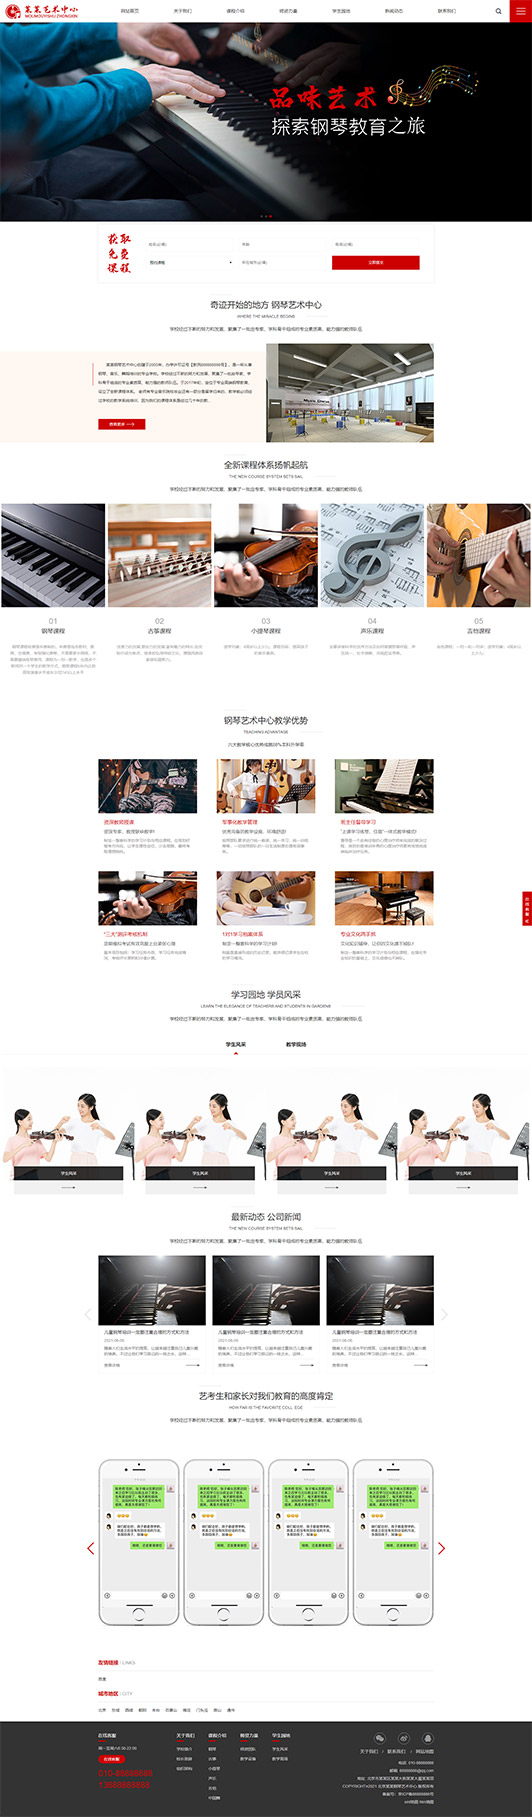 乐山钢琴艺术培训公司响应式企业网站